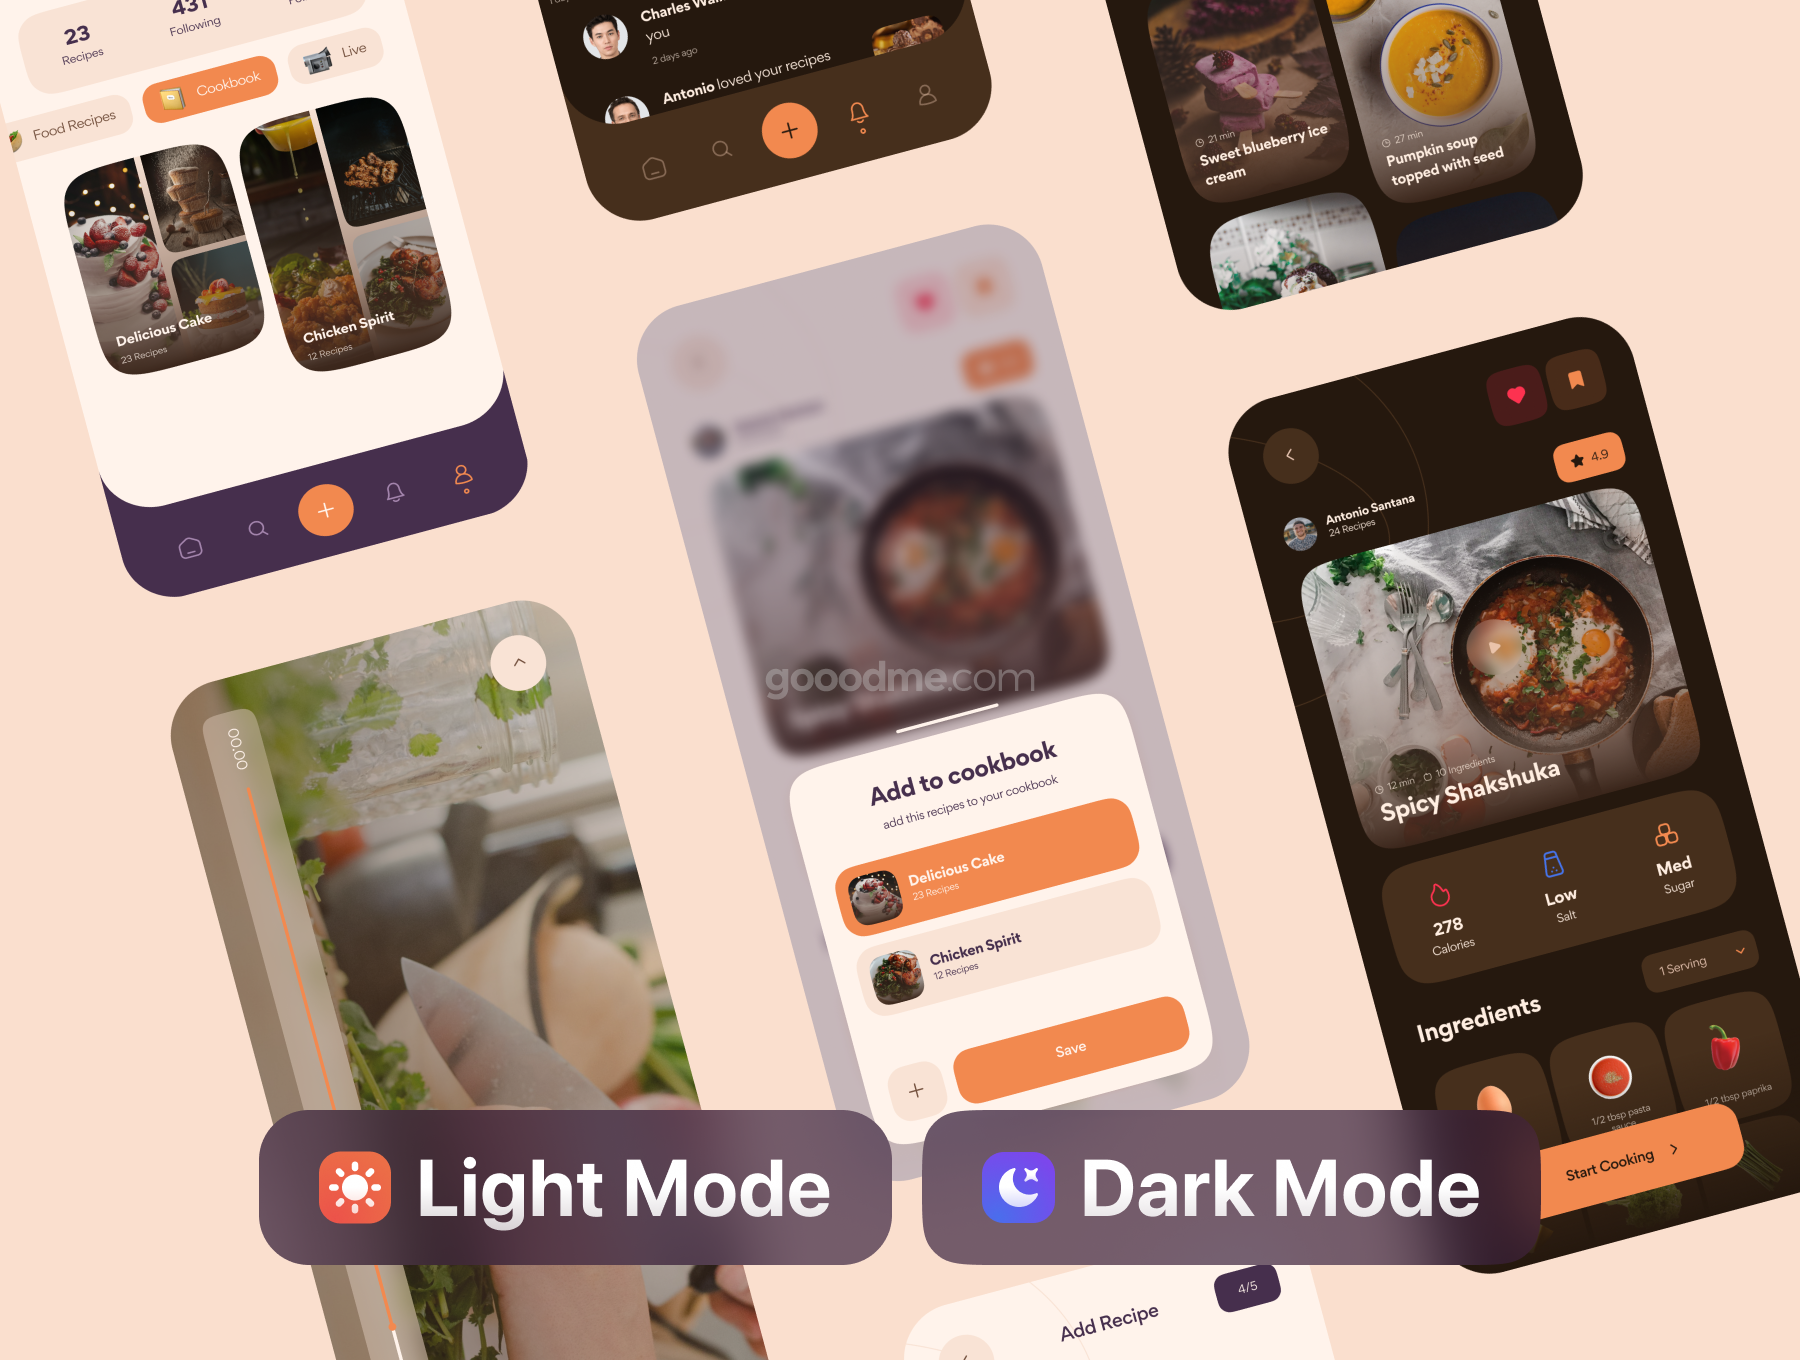 食品菜单在线点餐类应用app设计 UI 套件Appe?tit – Food Recipes App UI Kit